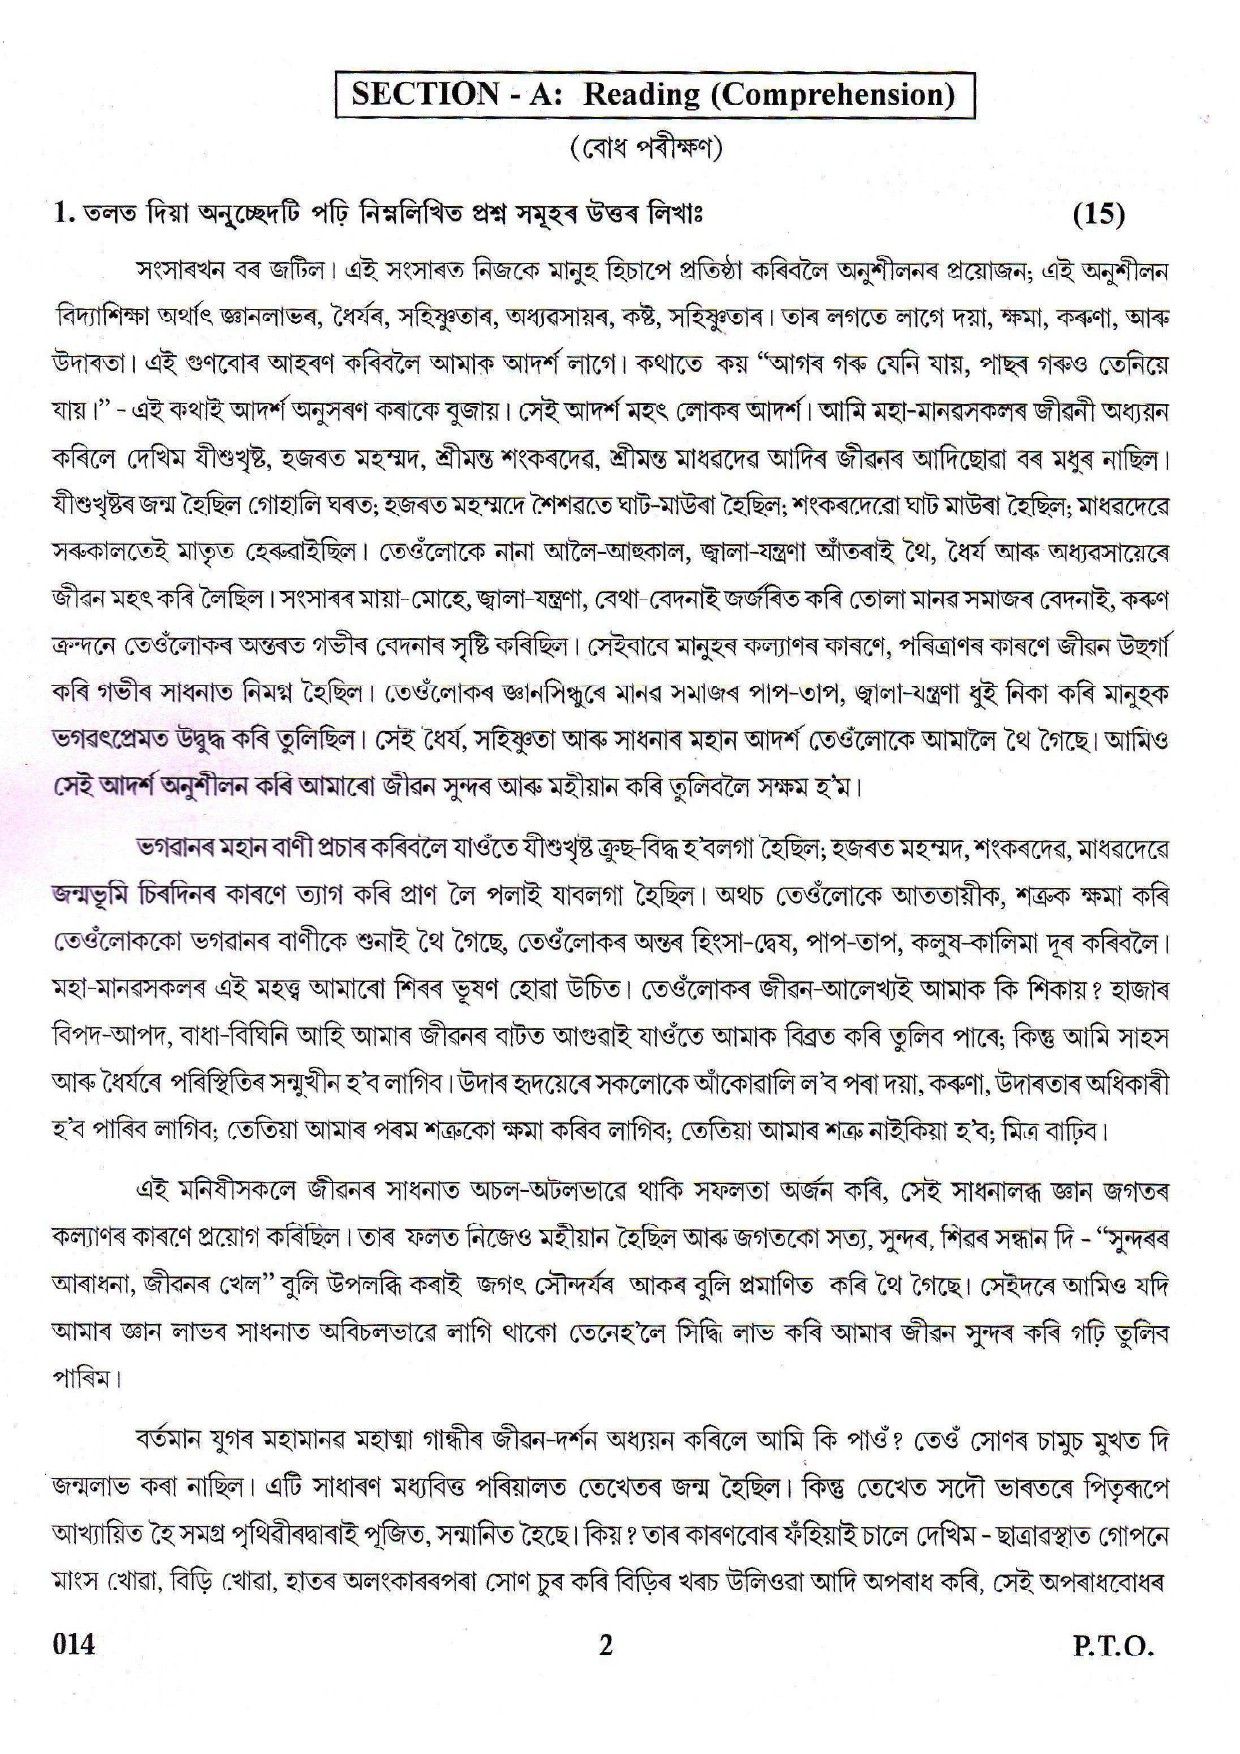 Assamese CBSE Class X Sample Question Paper 2018-19 - Image 2